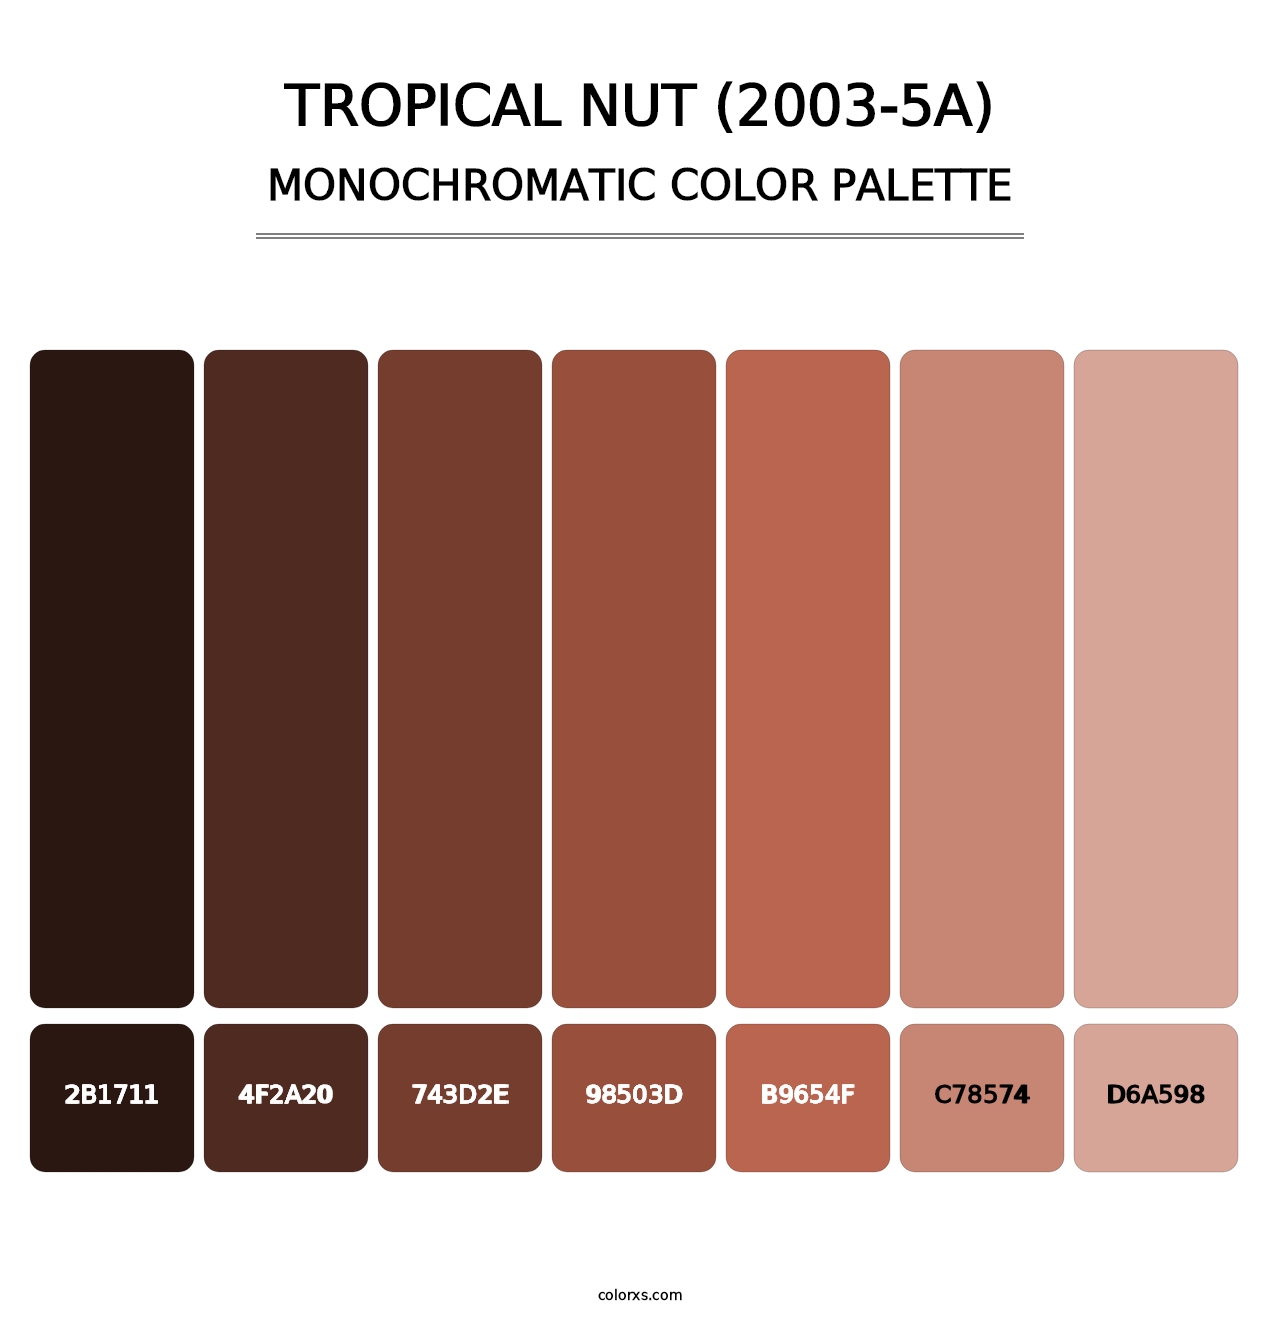 Tropical Nut (2003-5A) - Monochromatic Color Palette